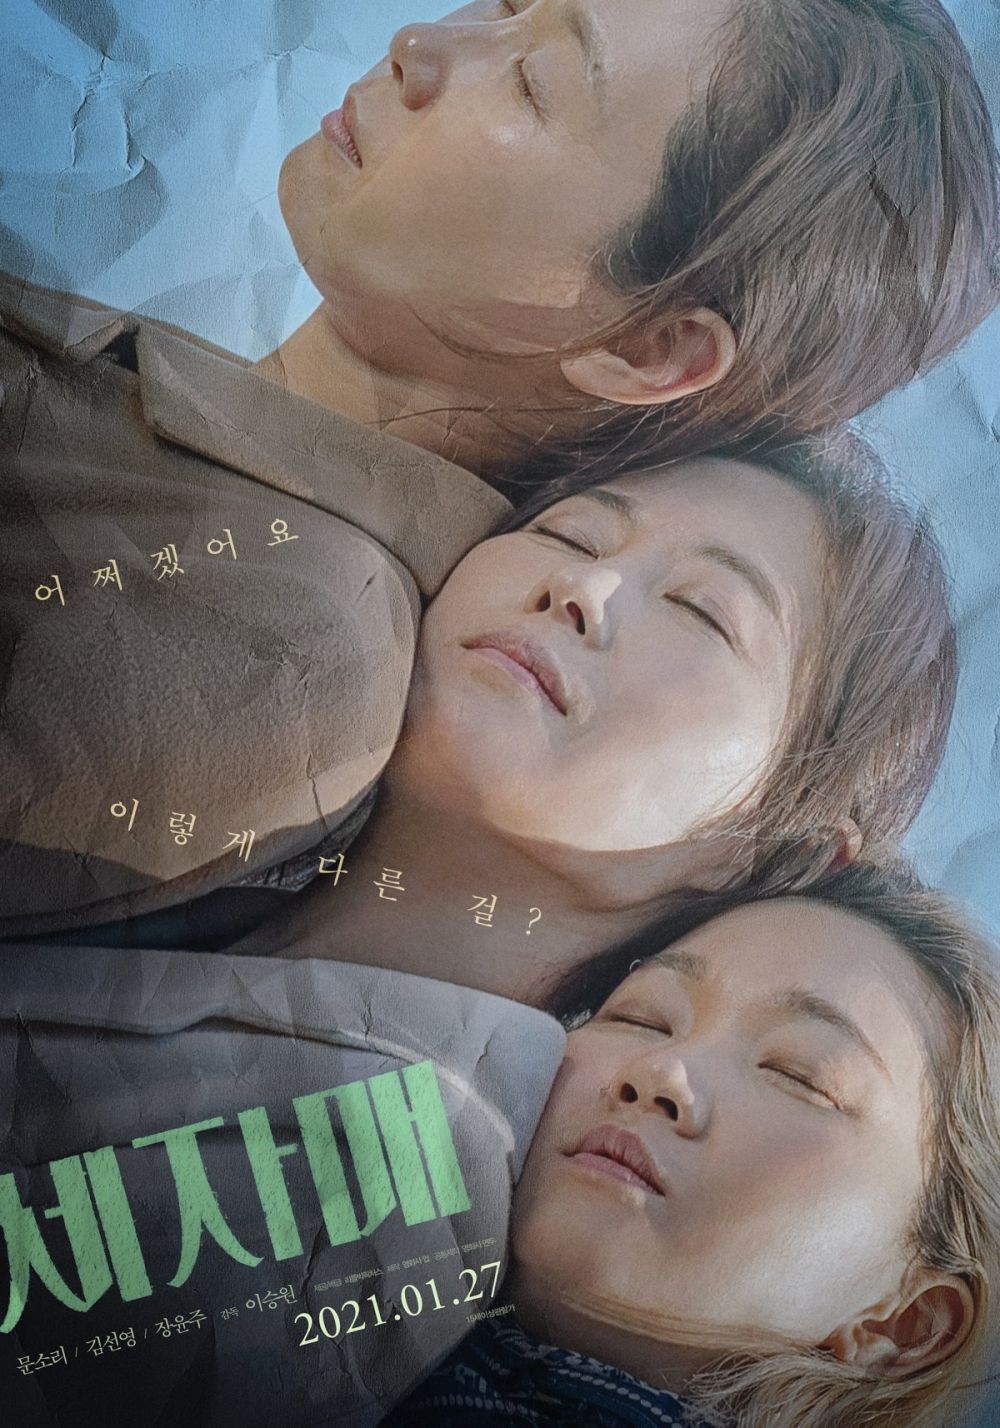 7 Drama dan film Korea tayang Desember 2021 di Viu, beraneka genre